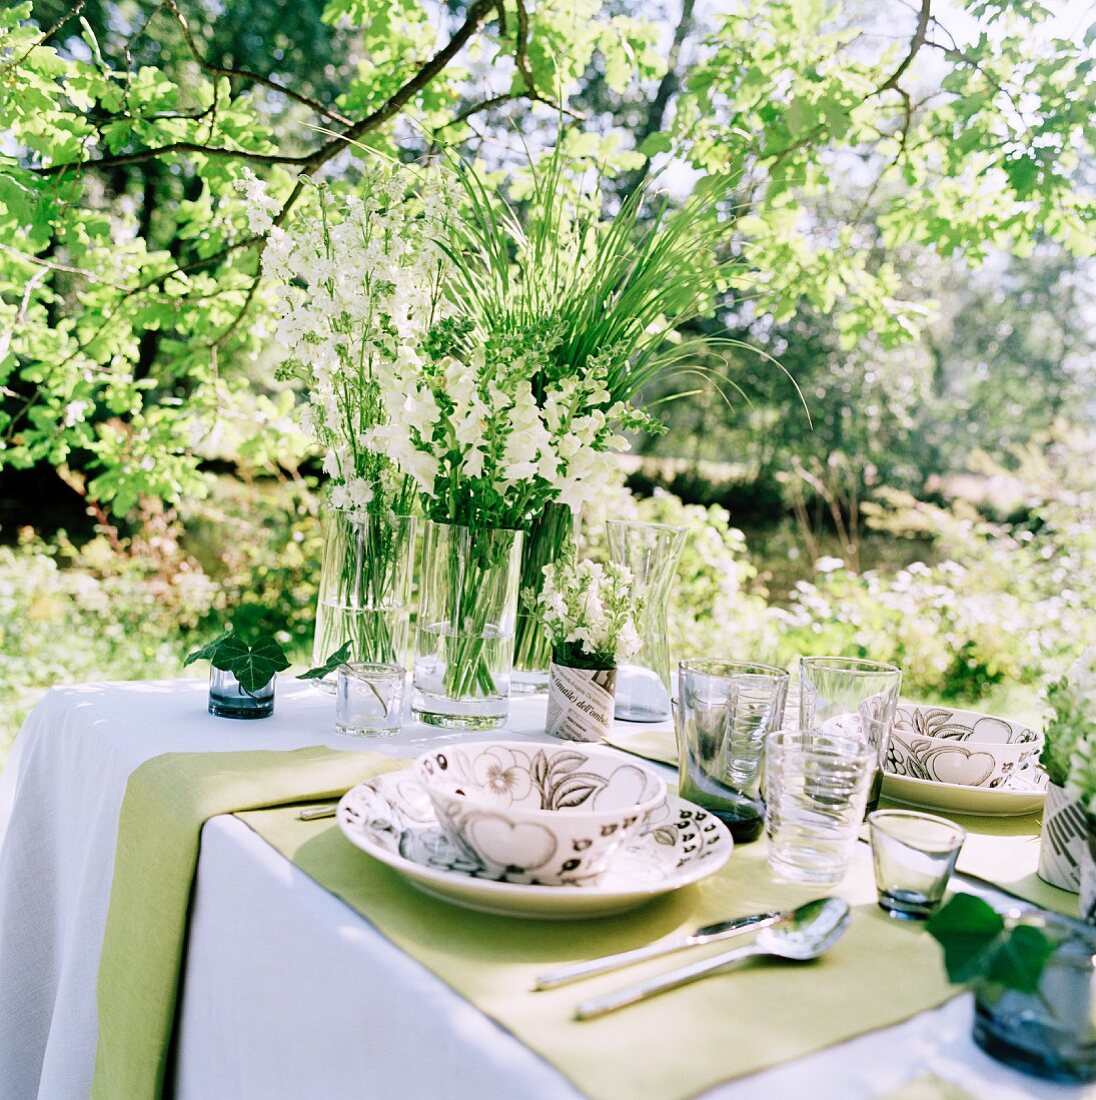 Festlich gedeckter Tisch in sommerlichem Garten